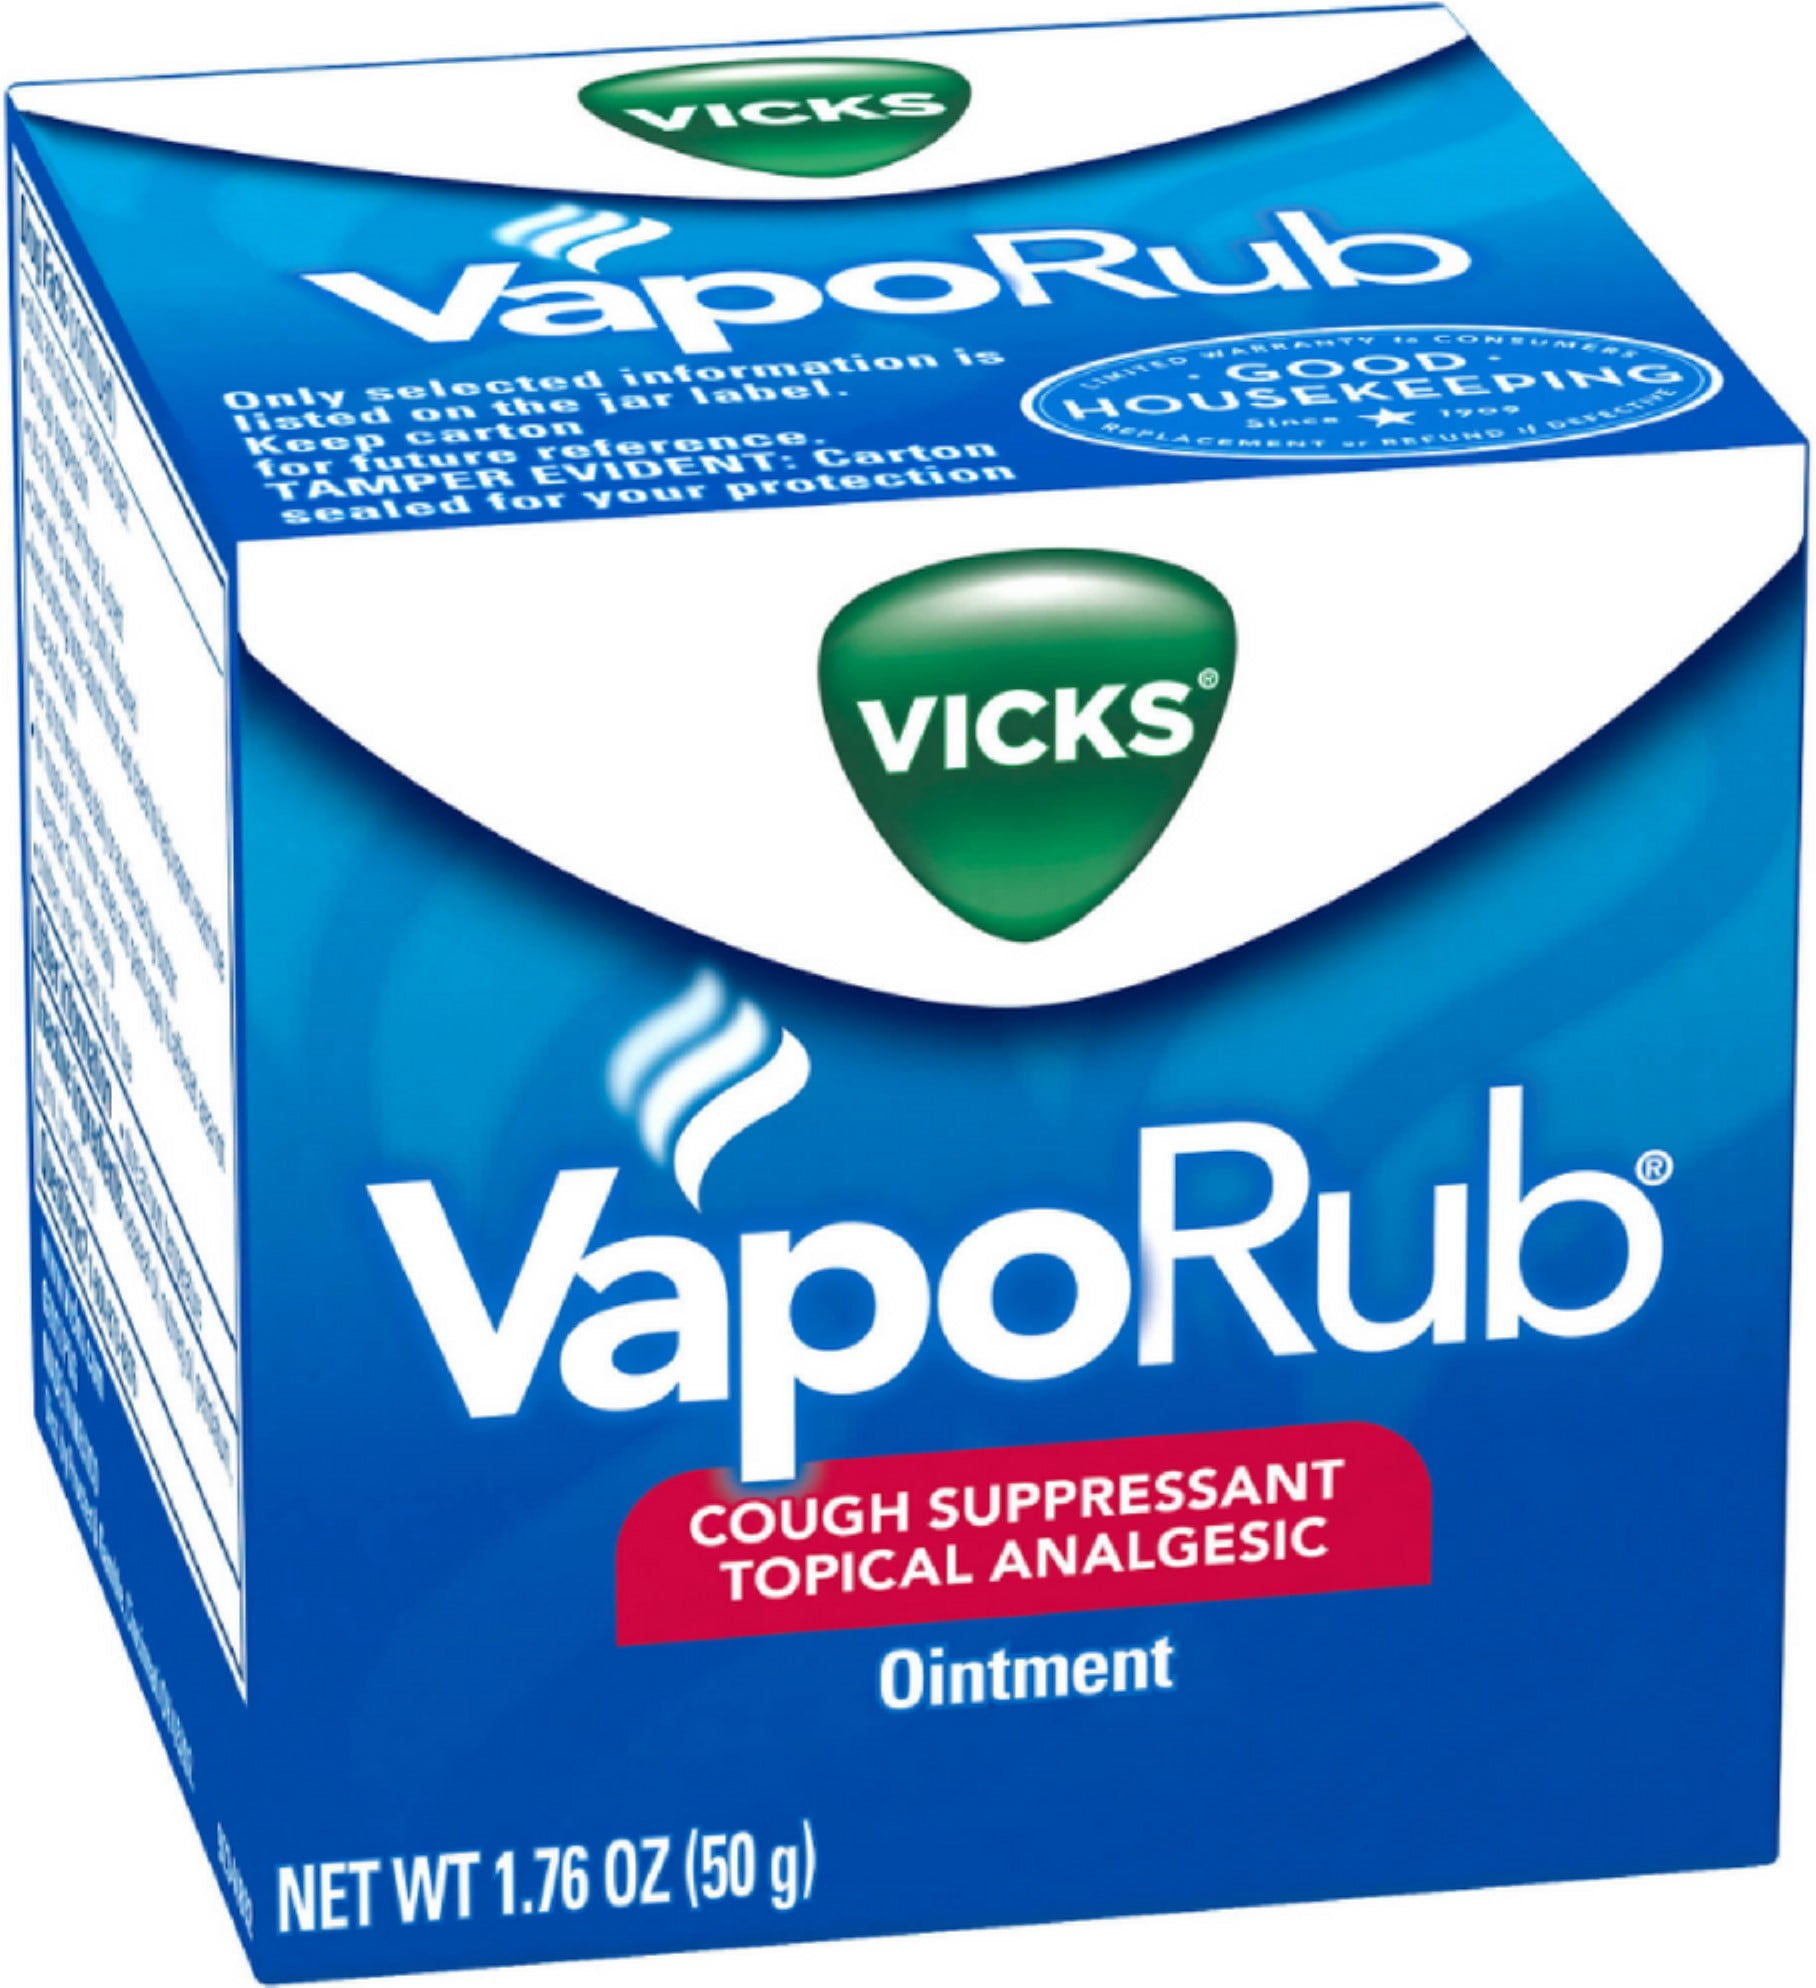 Vicks VapoRub Pommade - Toux Rhumes Bronchites simples - Pot 50g